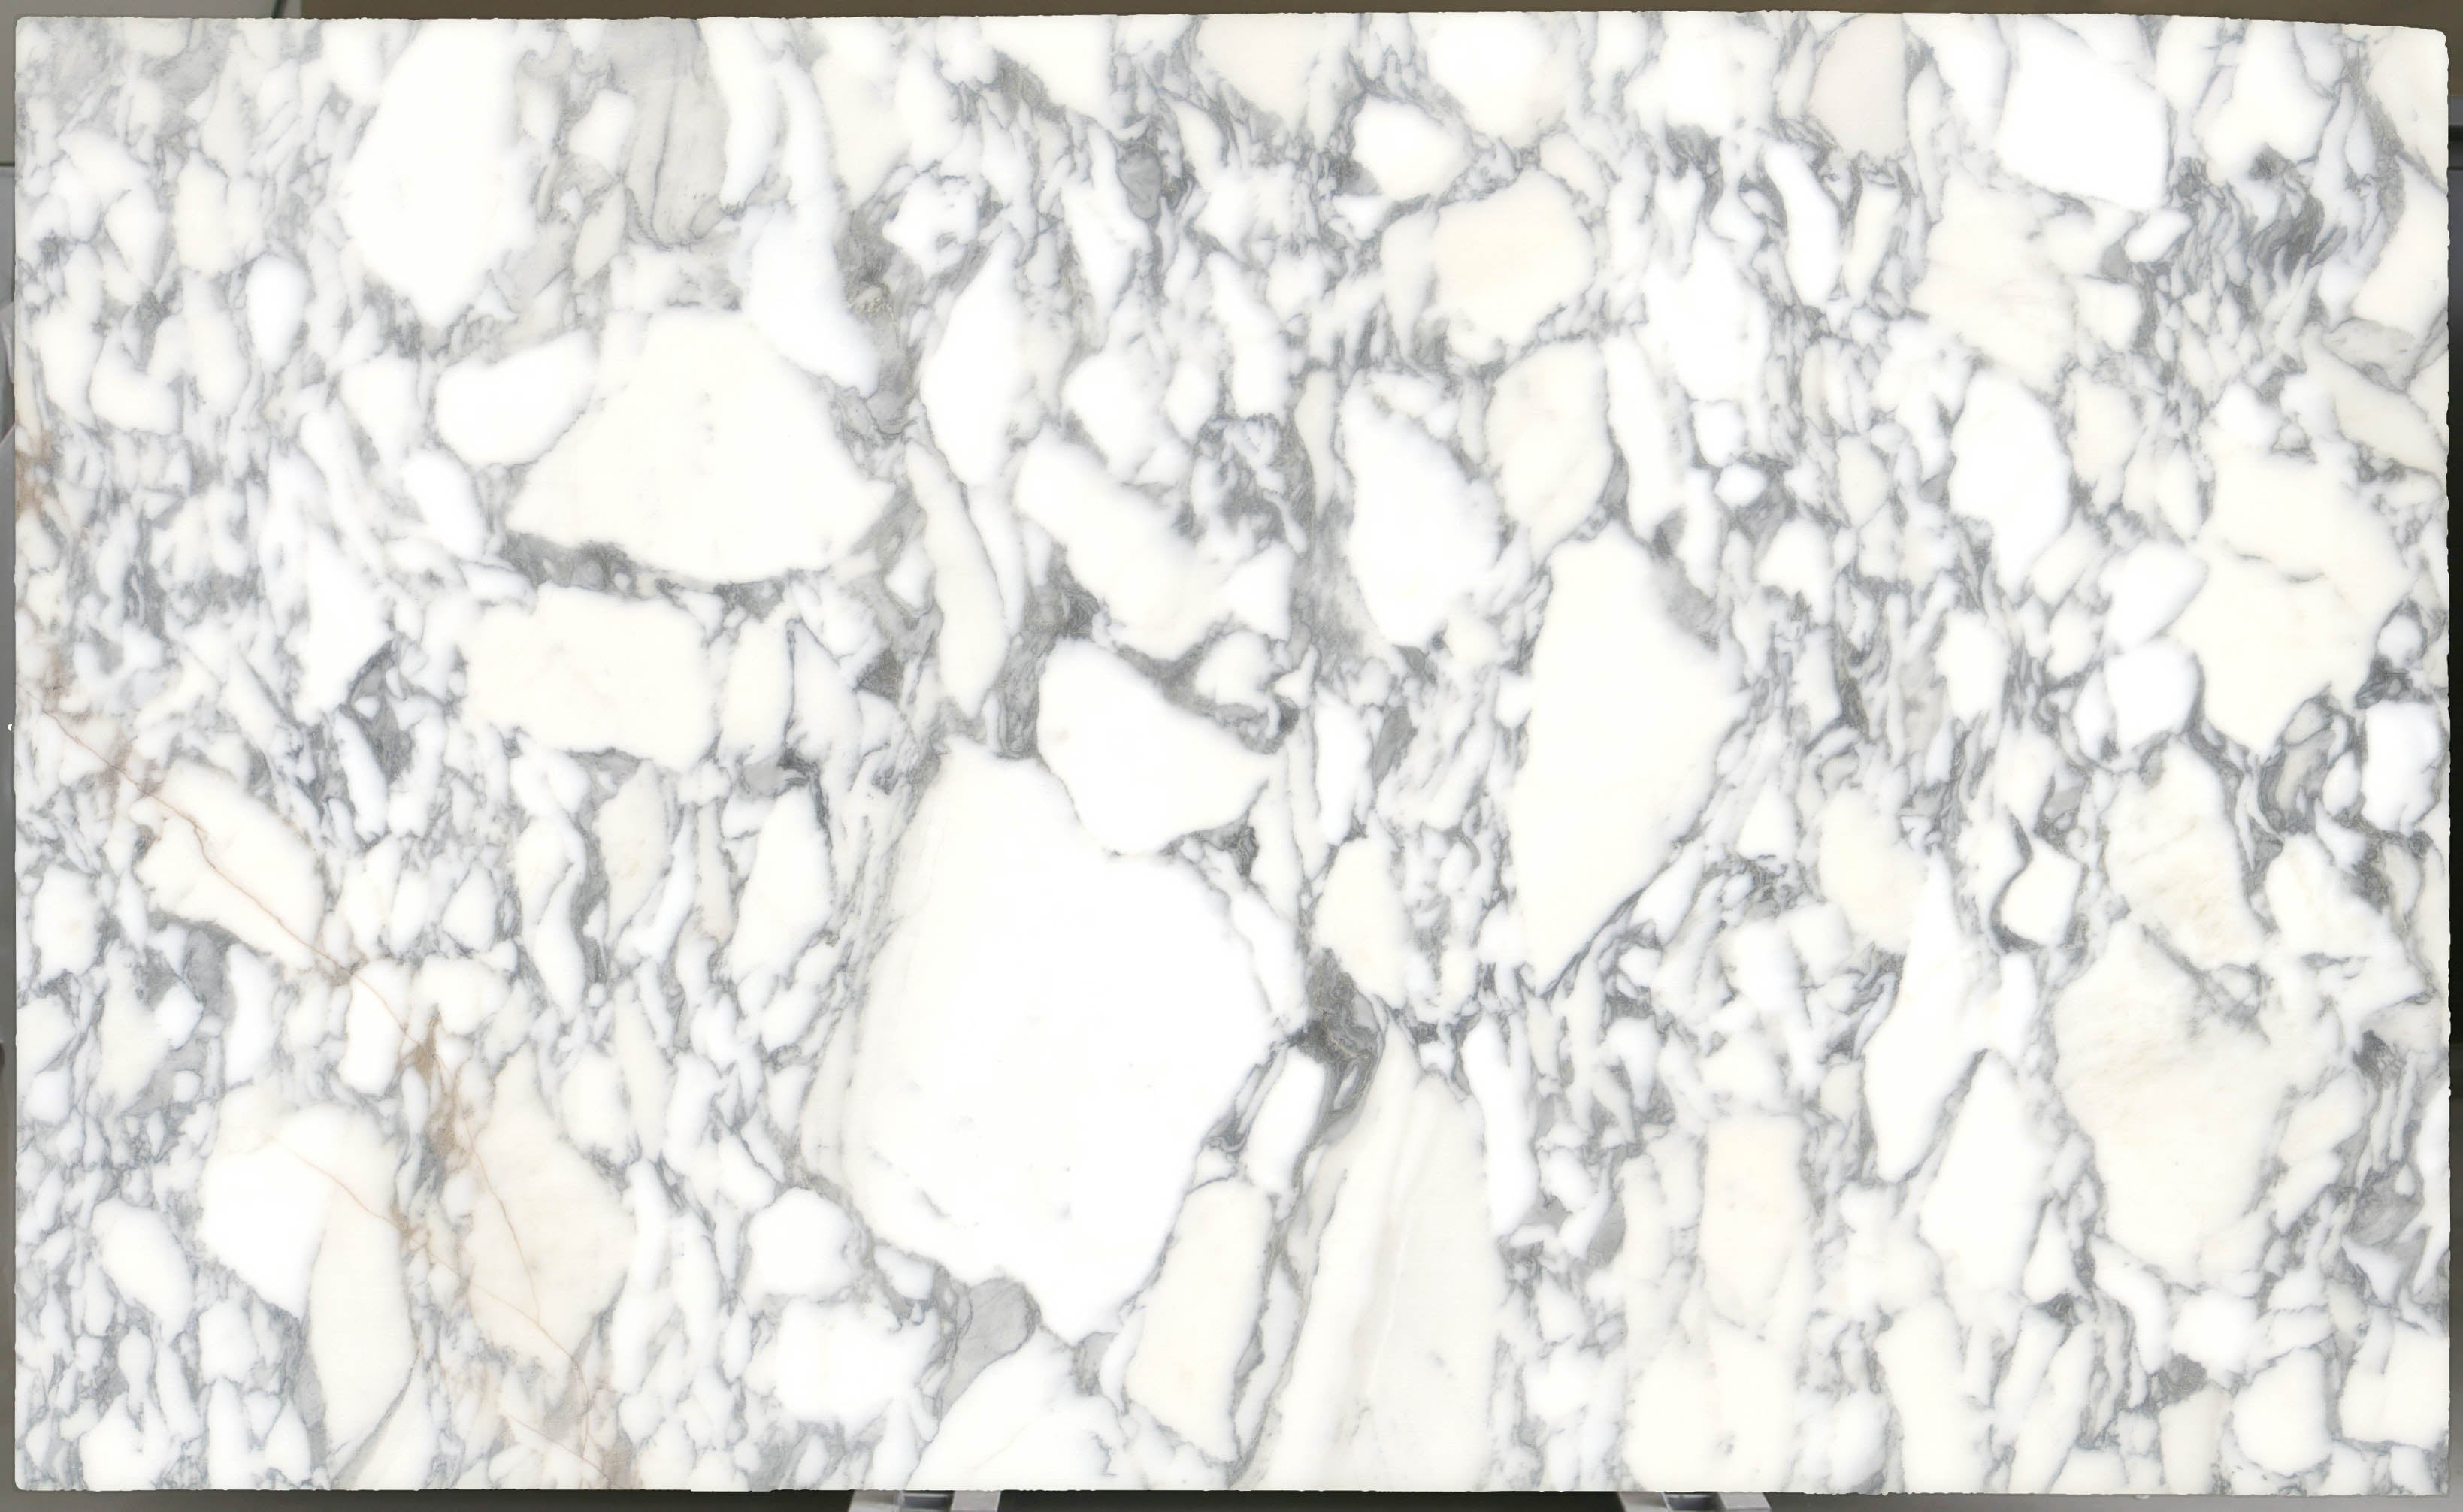  Arabescato Corchia Marble Slab 3/4 - 4026#28 -  VS 74x123 